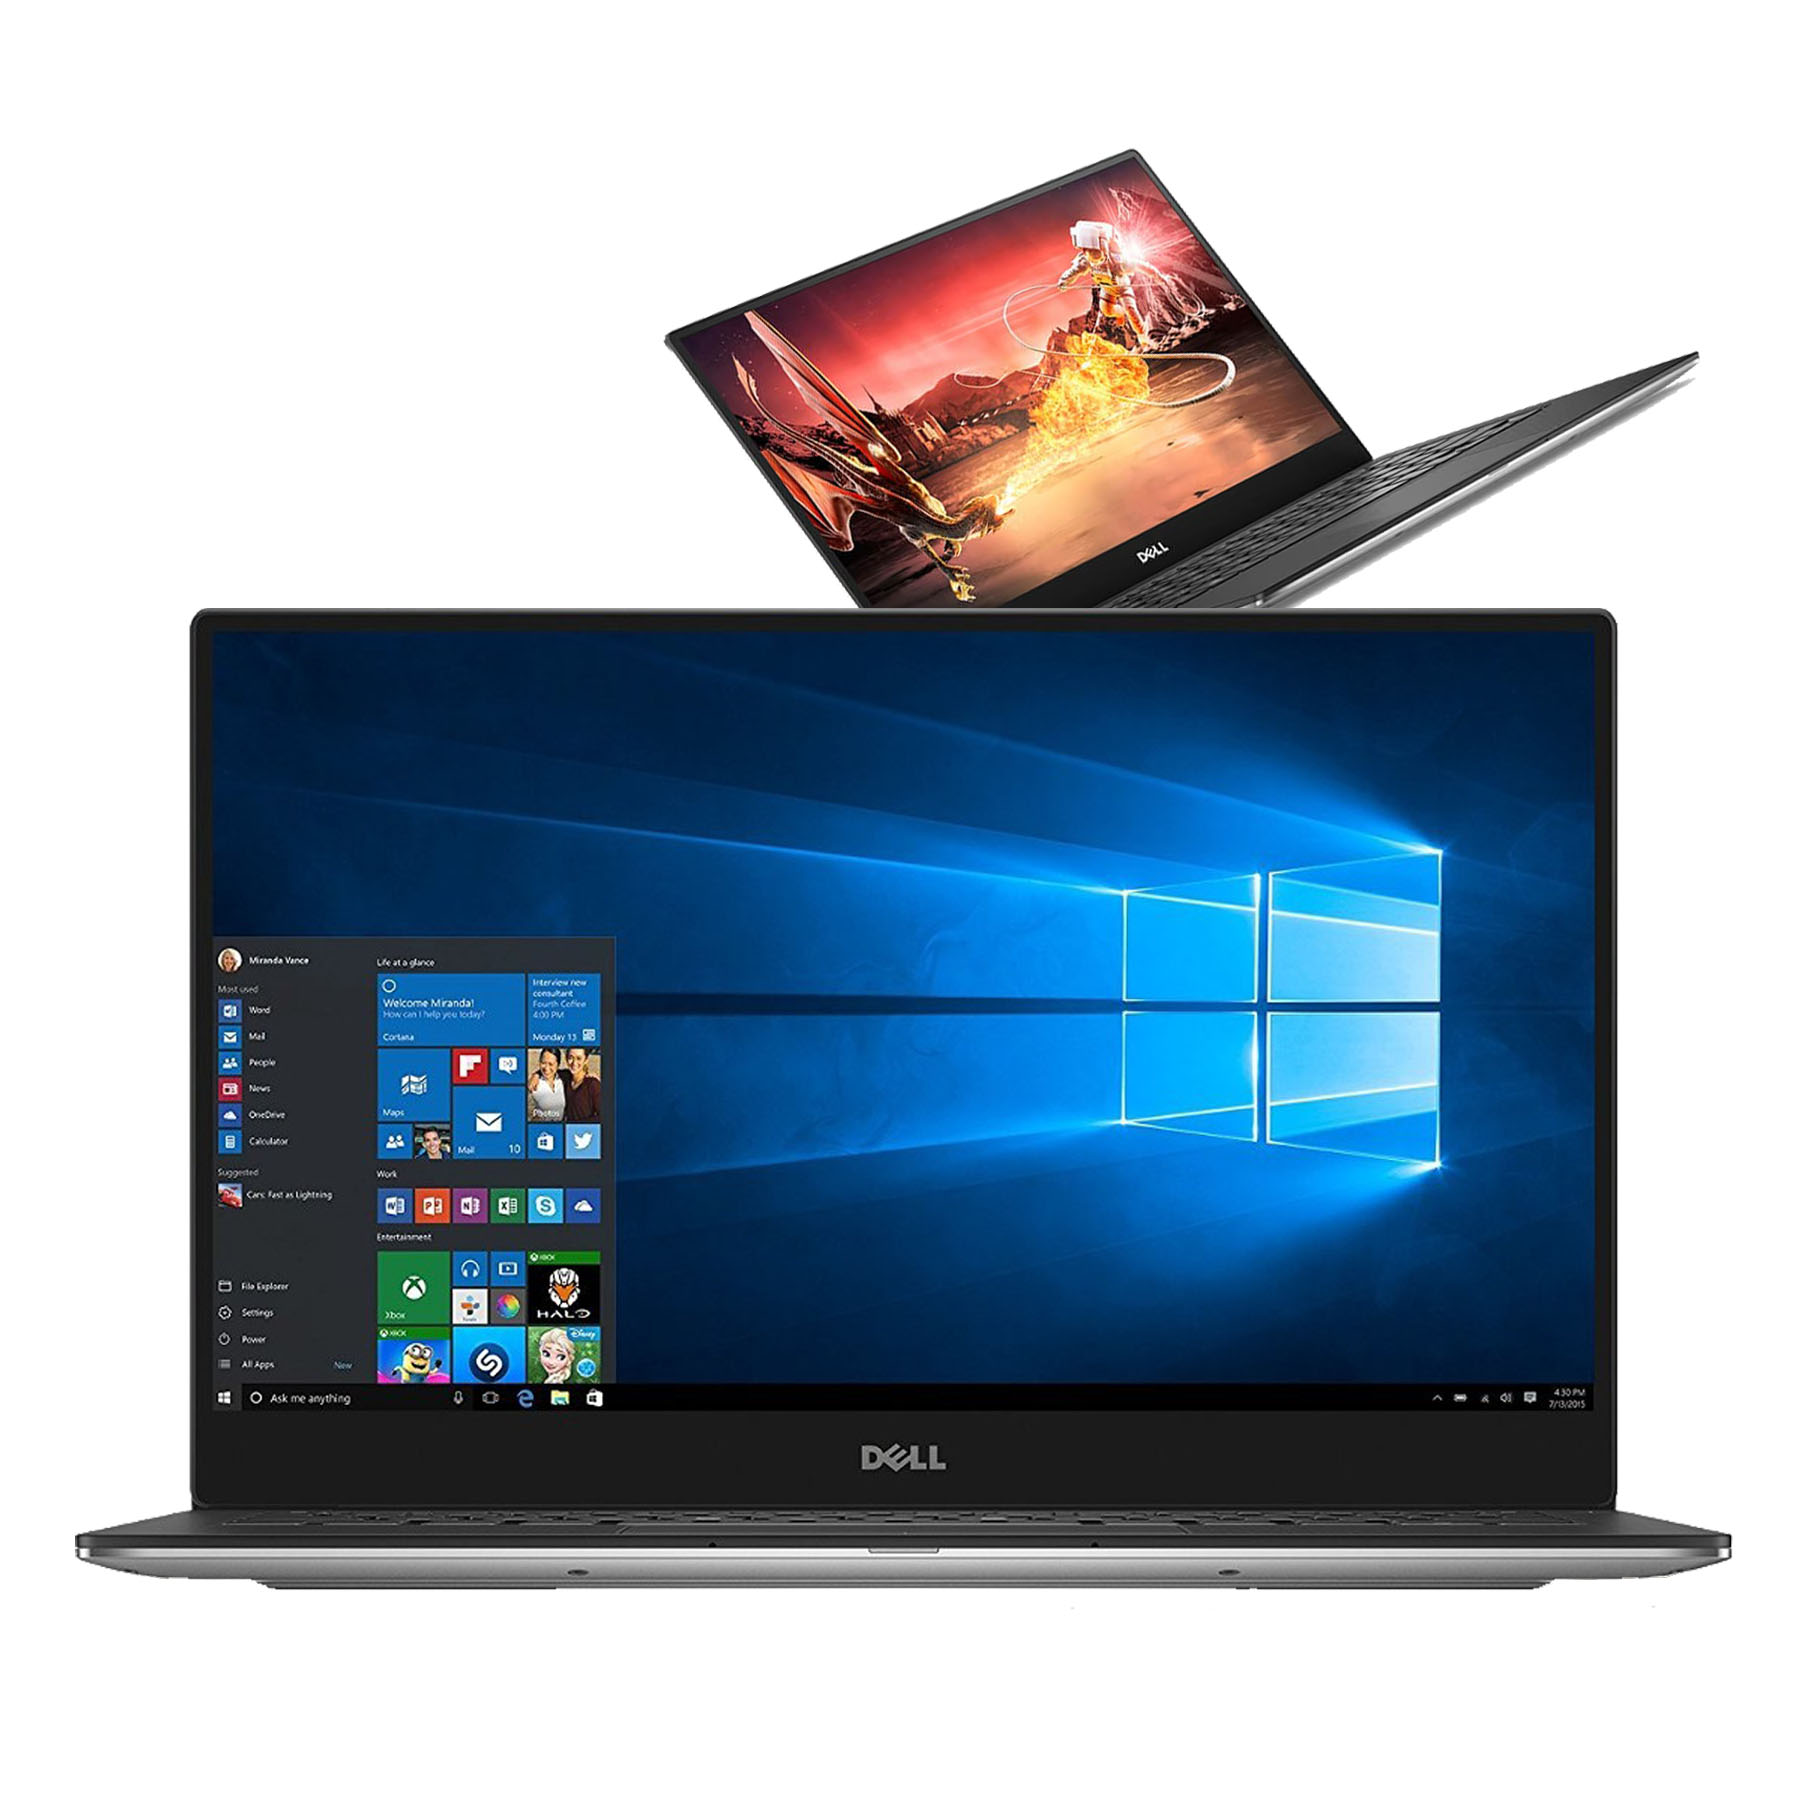 Bán laptop Dell XPS 13 -9360 core i7 Gold uy tín trên toàn quốc